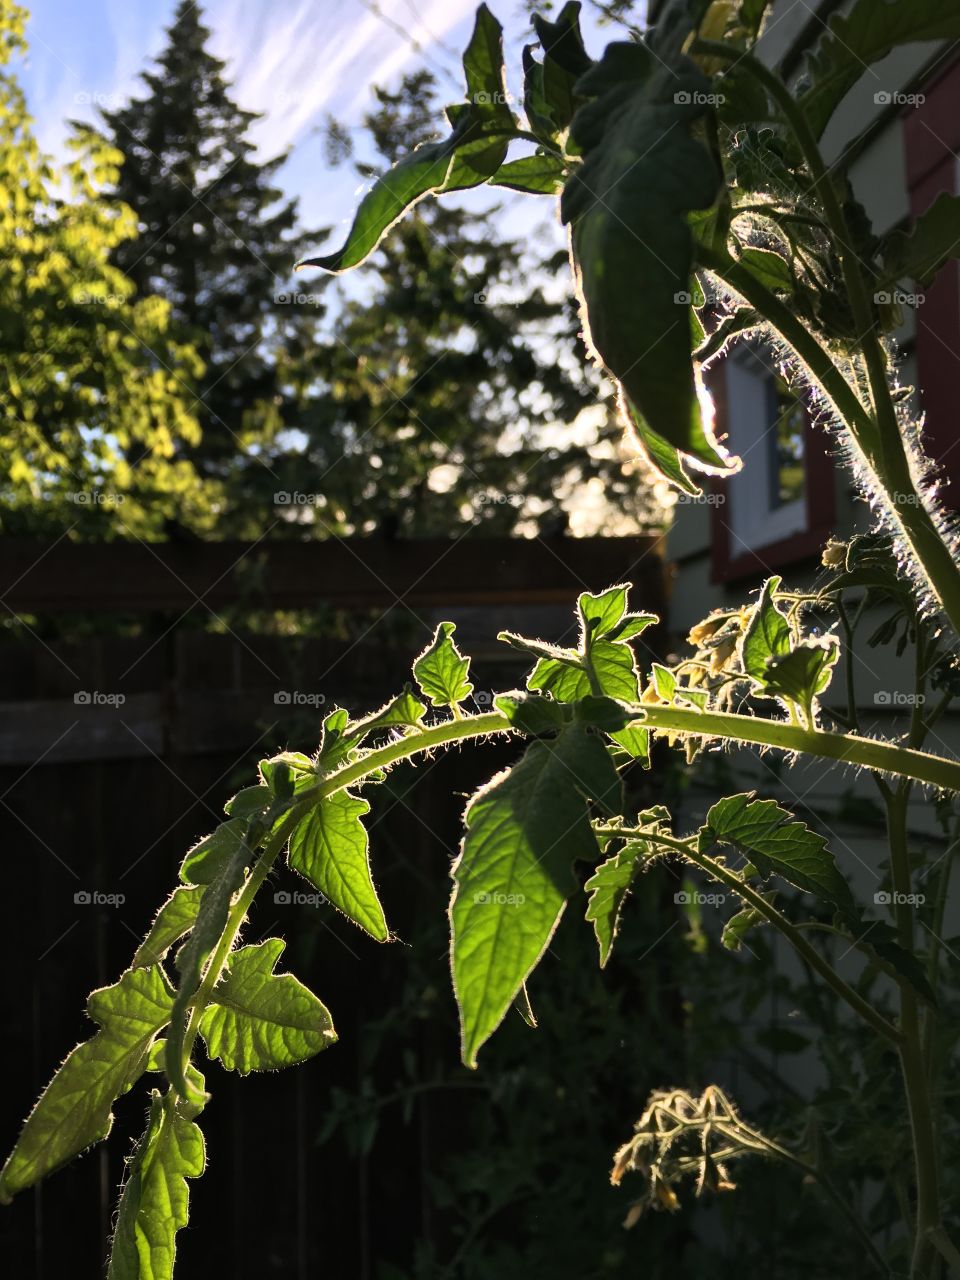 Tomato plant in the sun